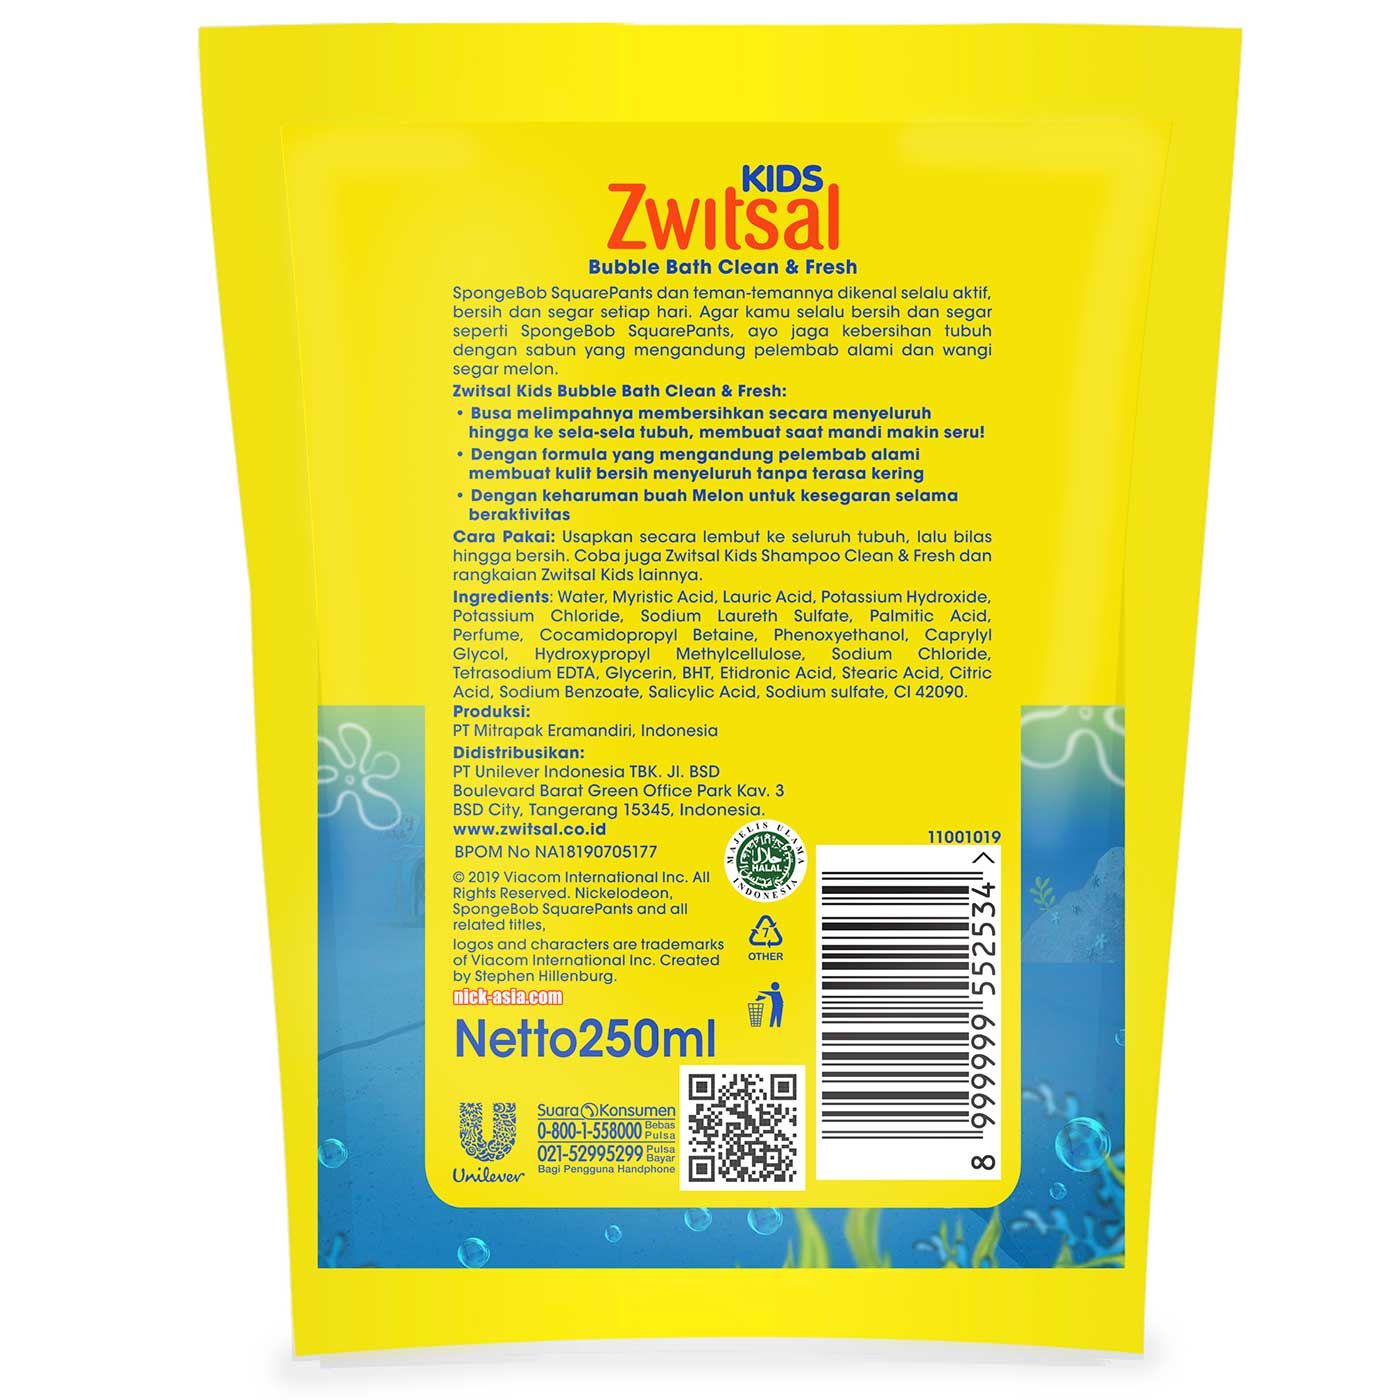 Zwitsal Kids Bubble Bath Blue Clean & Fresh 250ml - 4